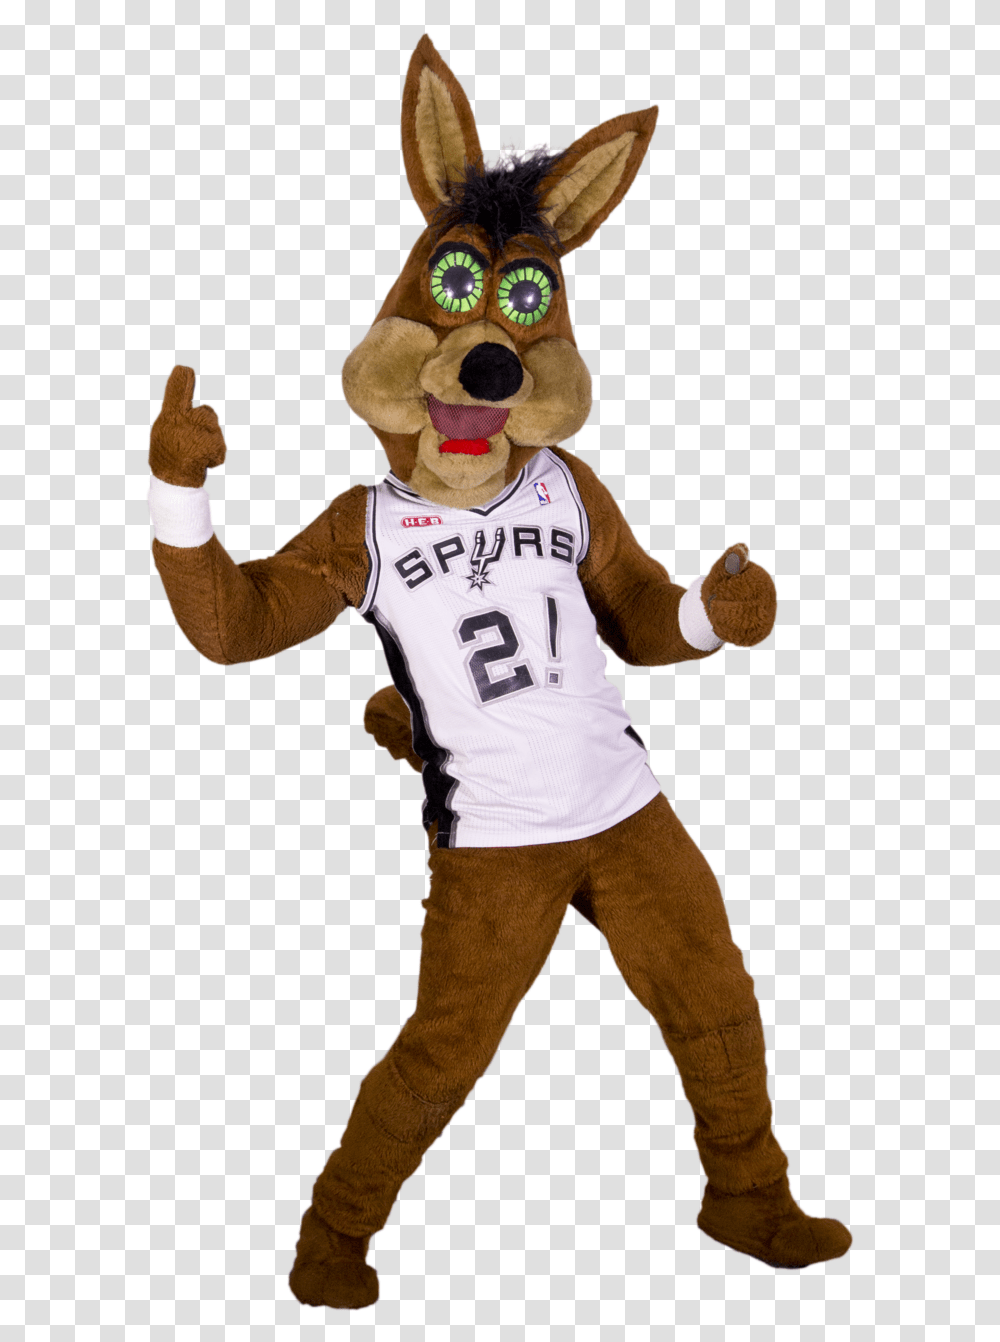 Free Spurs Coyote San Antonio Spurs, Mascot, Person Transparent Png